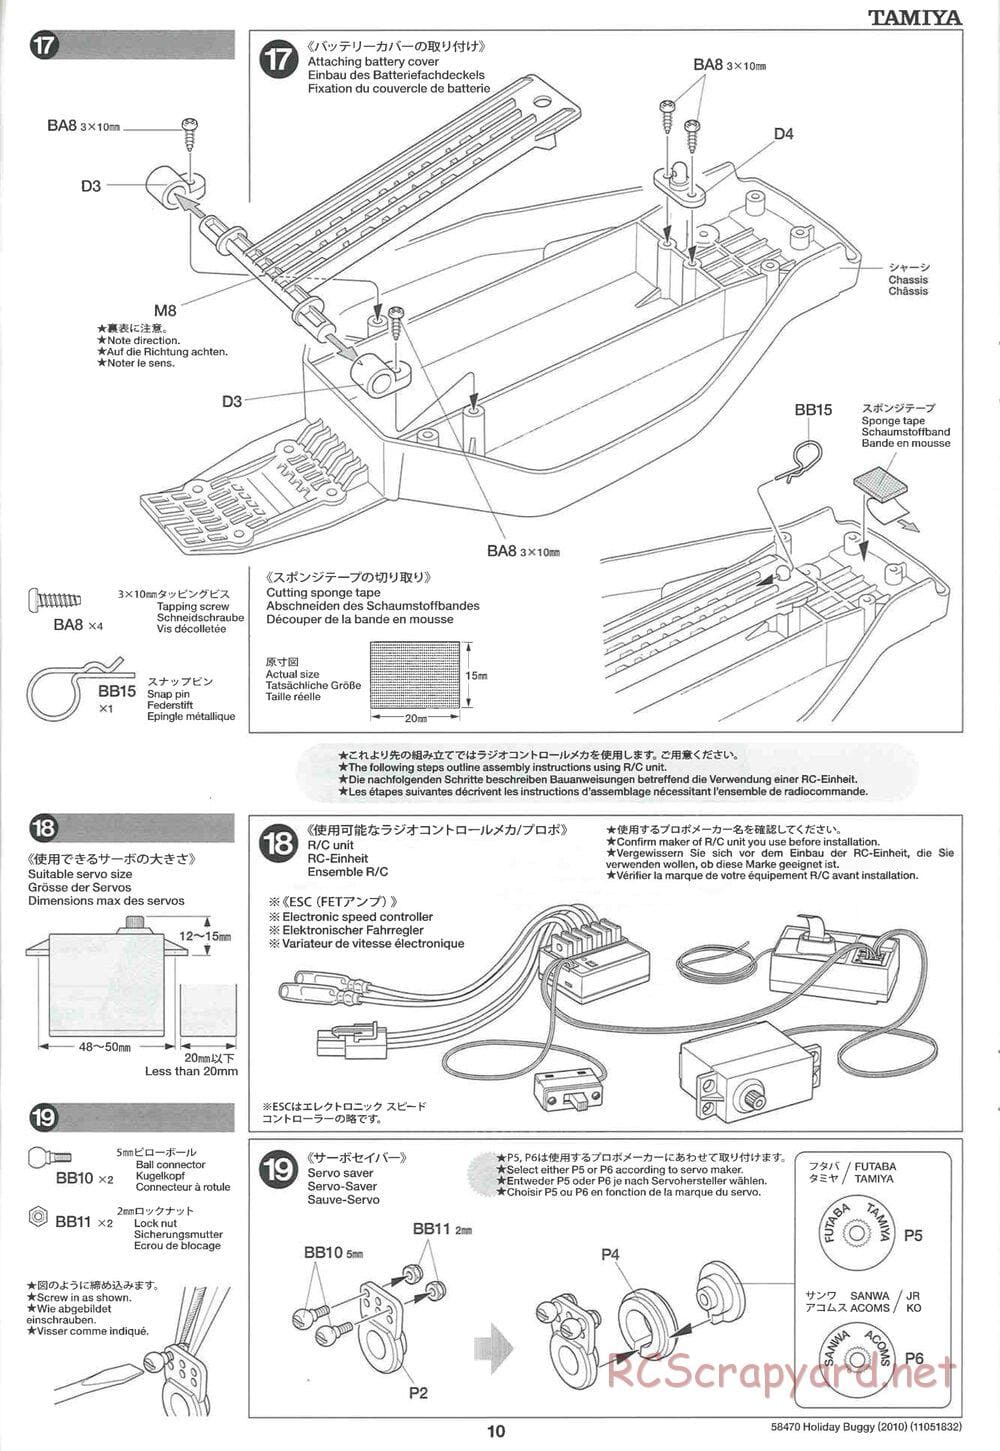 Tamiya - Holiday Buggy 2010 Chassis - Manual - Page 10